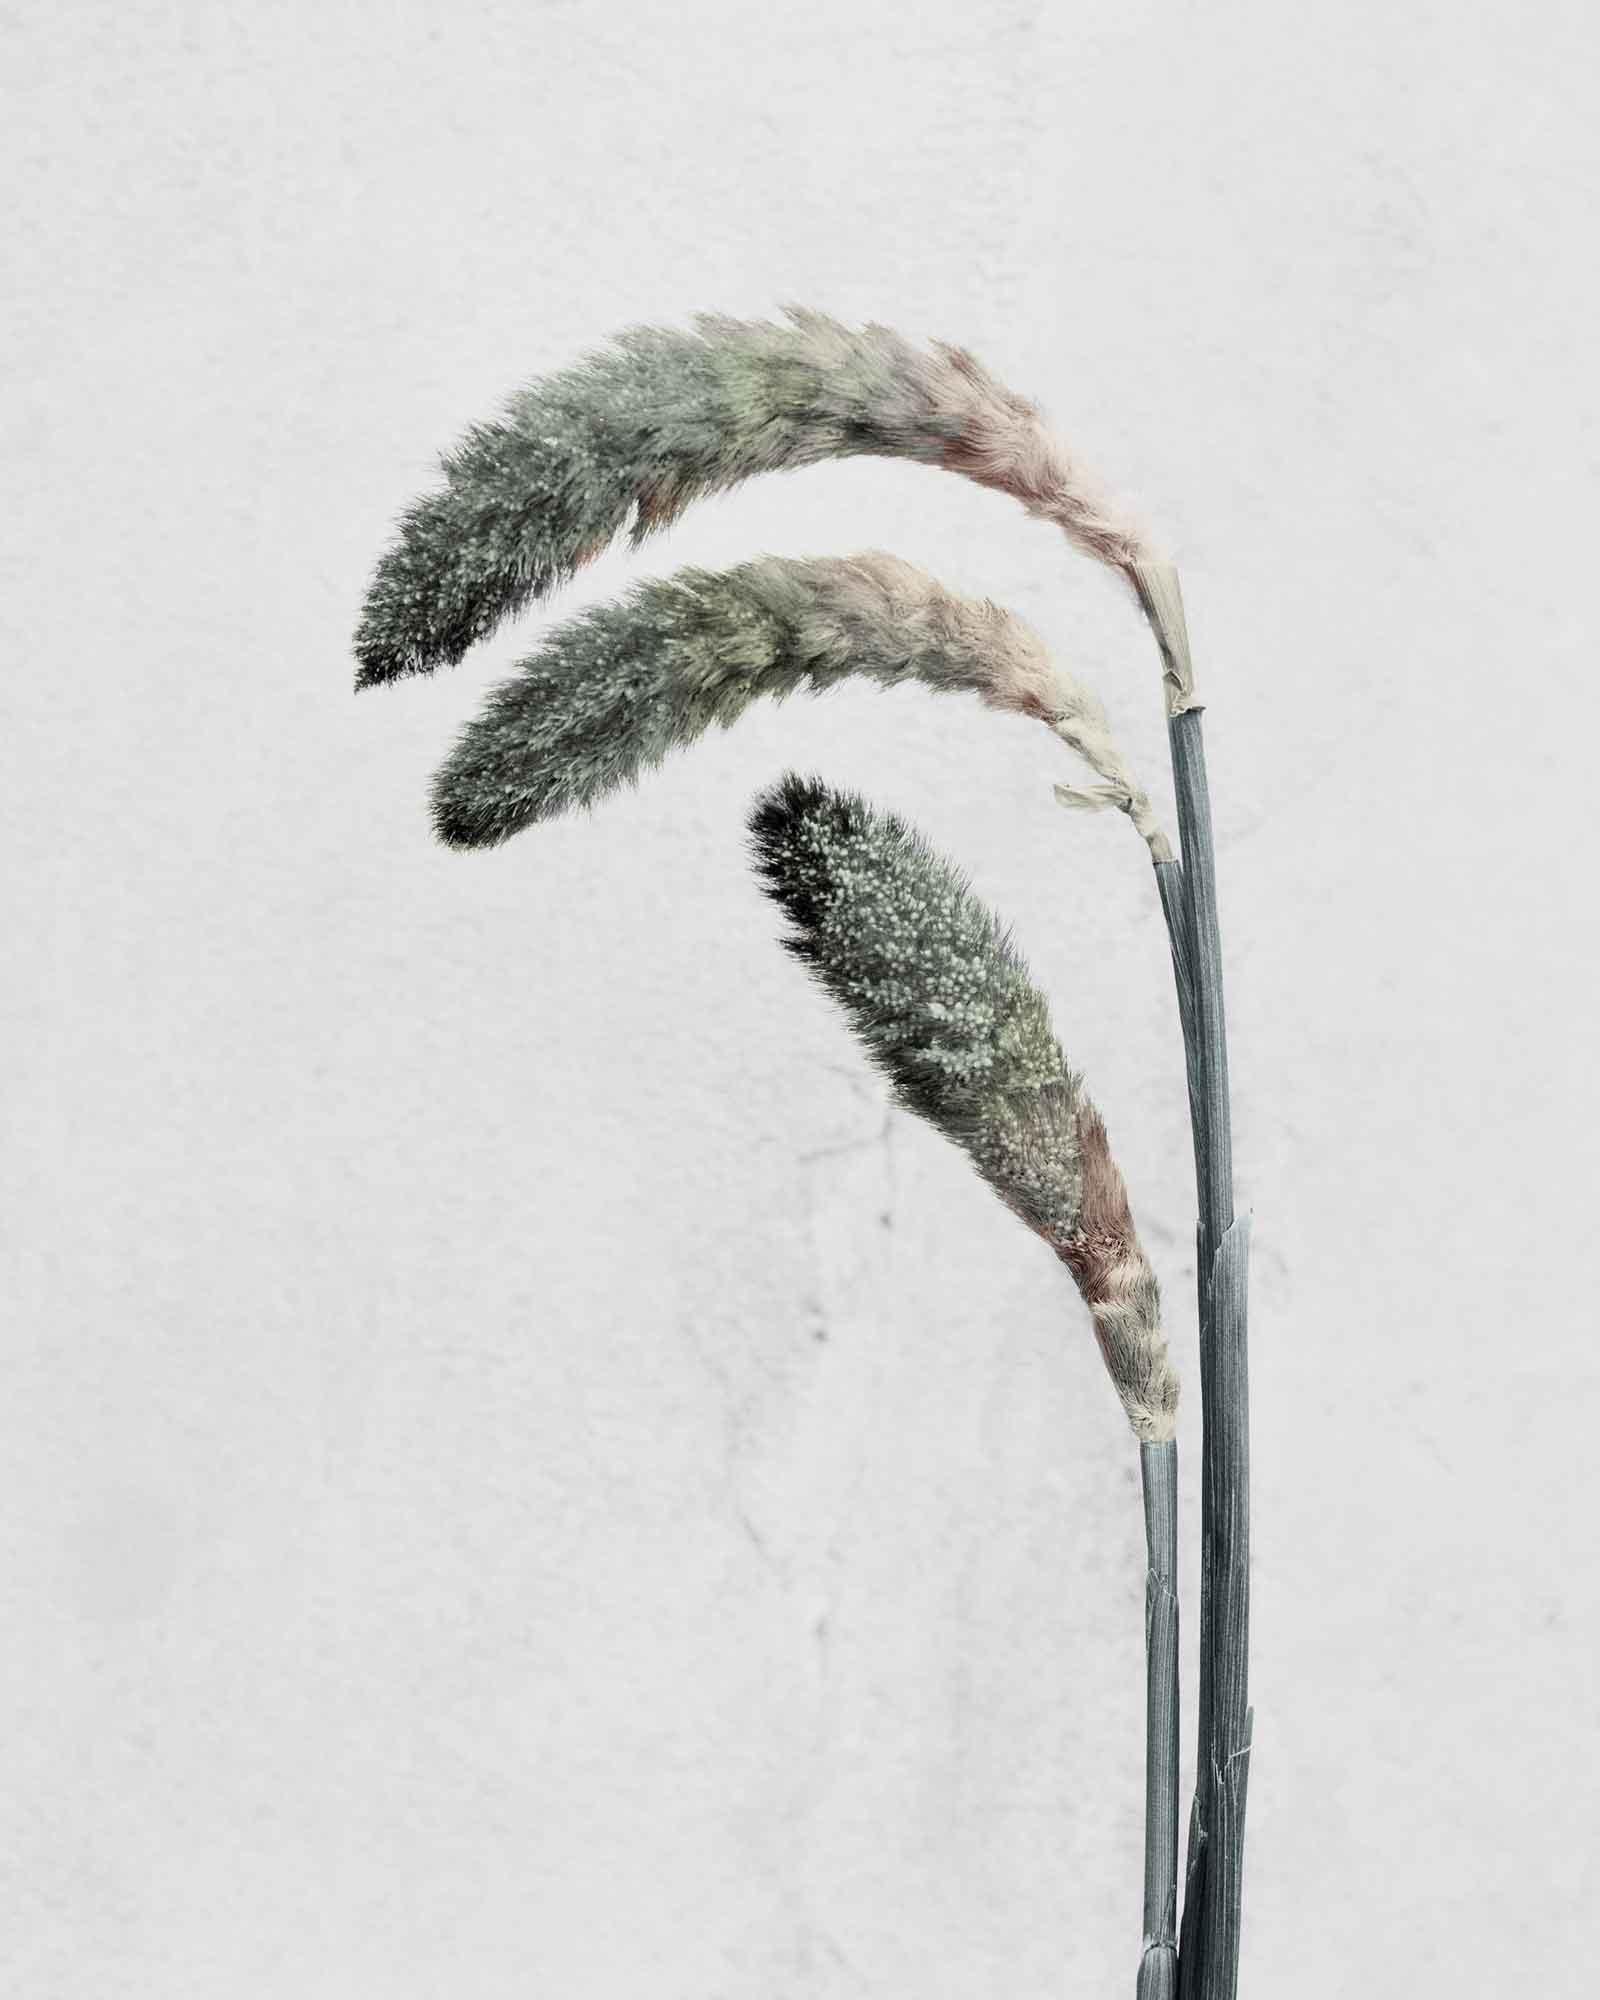 Vee Speers Still-Life Photograph – Botanica #22 (Pennisetum)